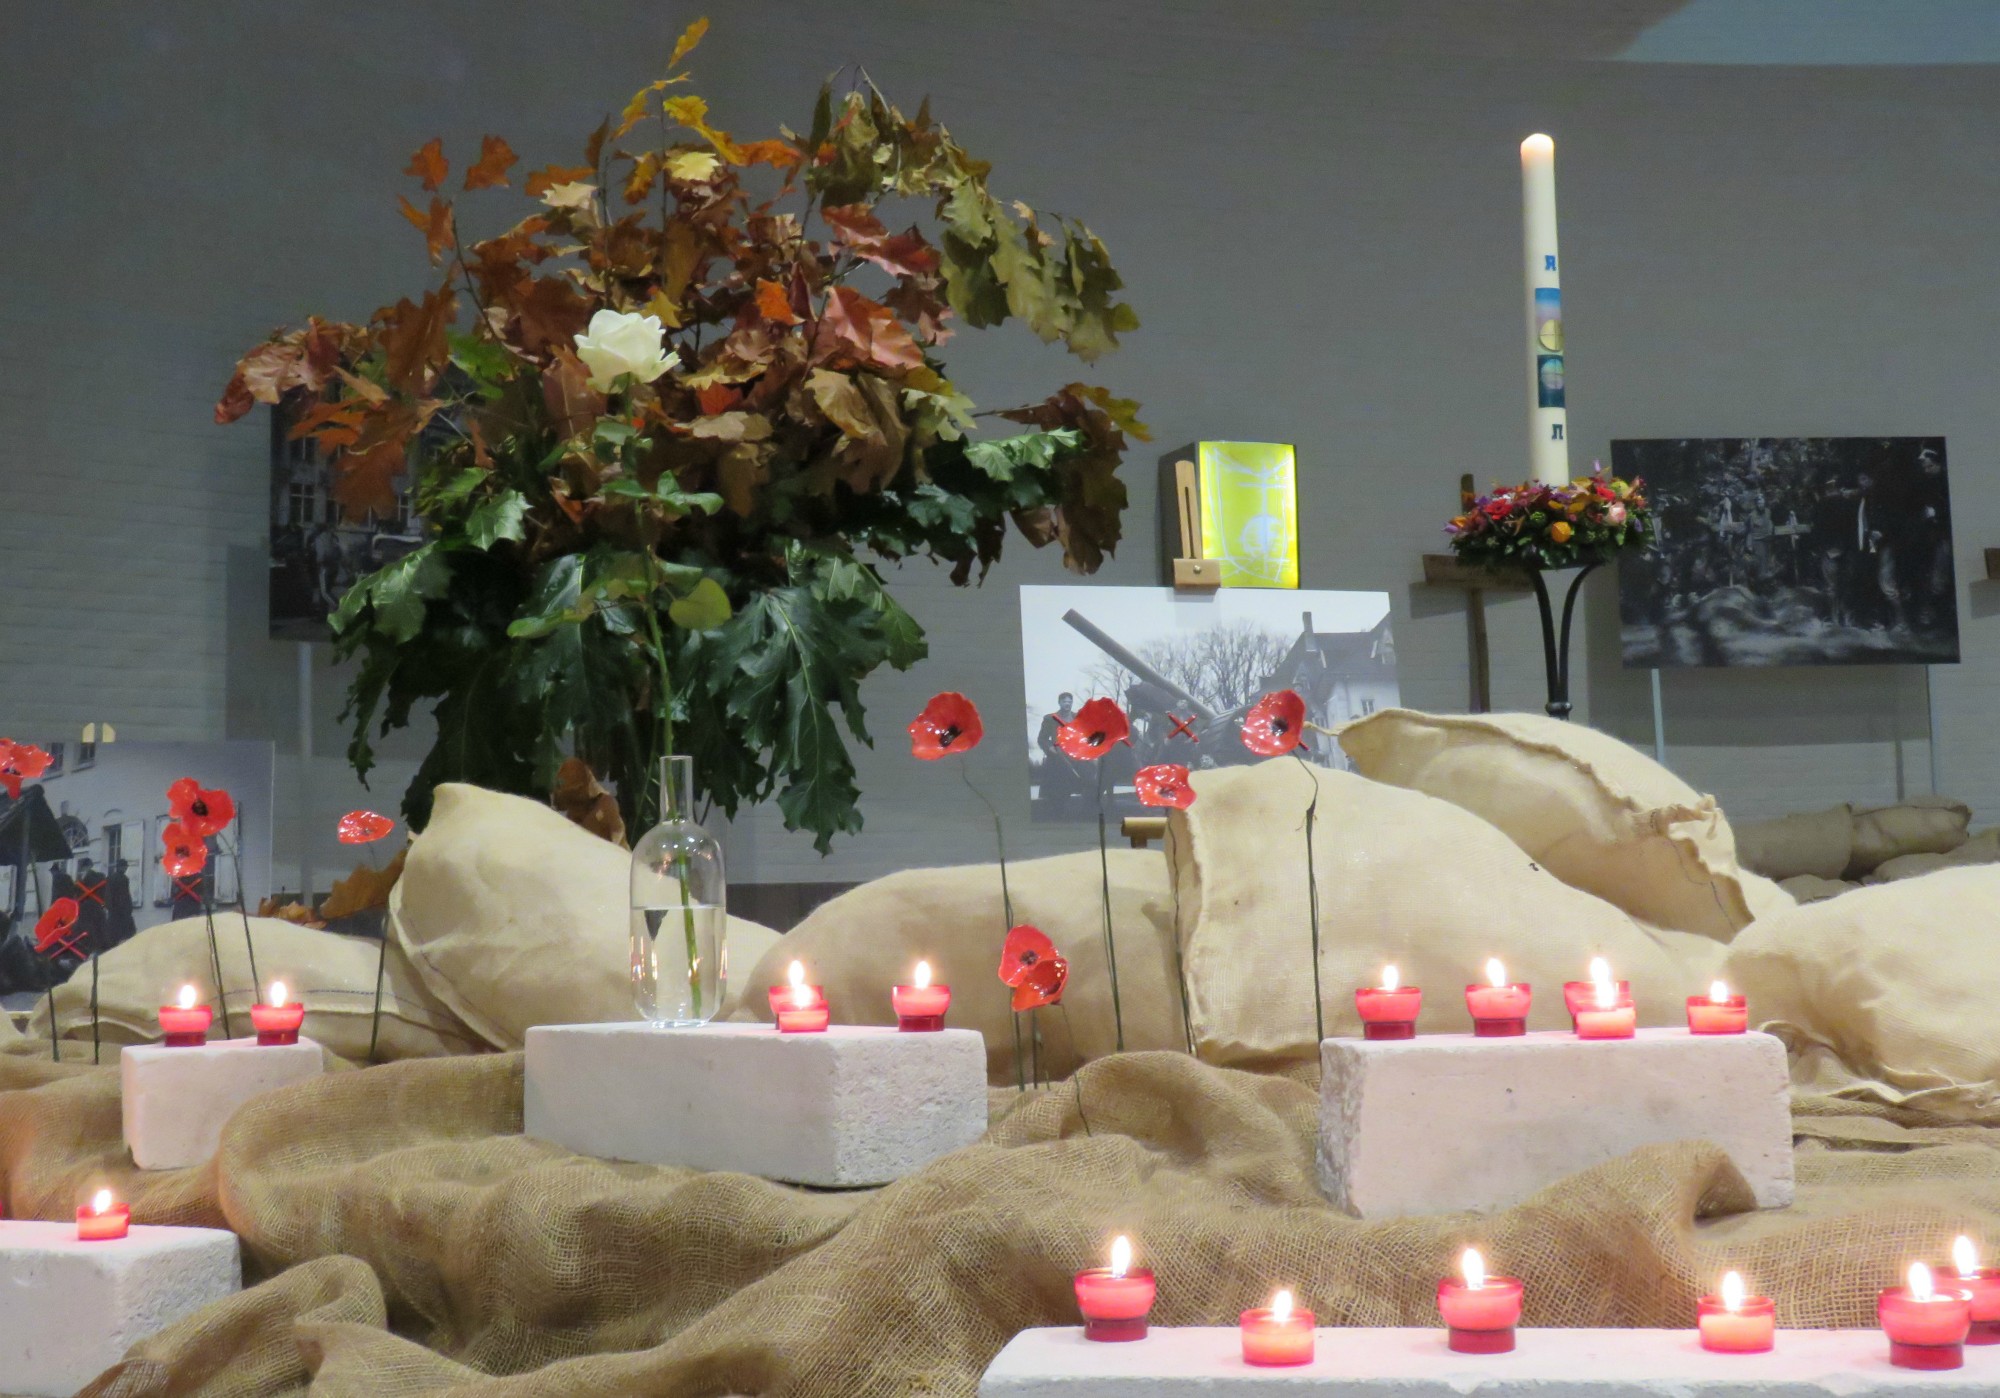 Viering 'Laten we vrede dromen' | 11 november | Sint-Anna-ten-Drieënkerk, Antwerpen Linkeroever